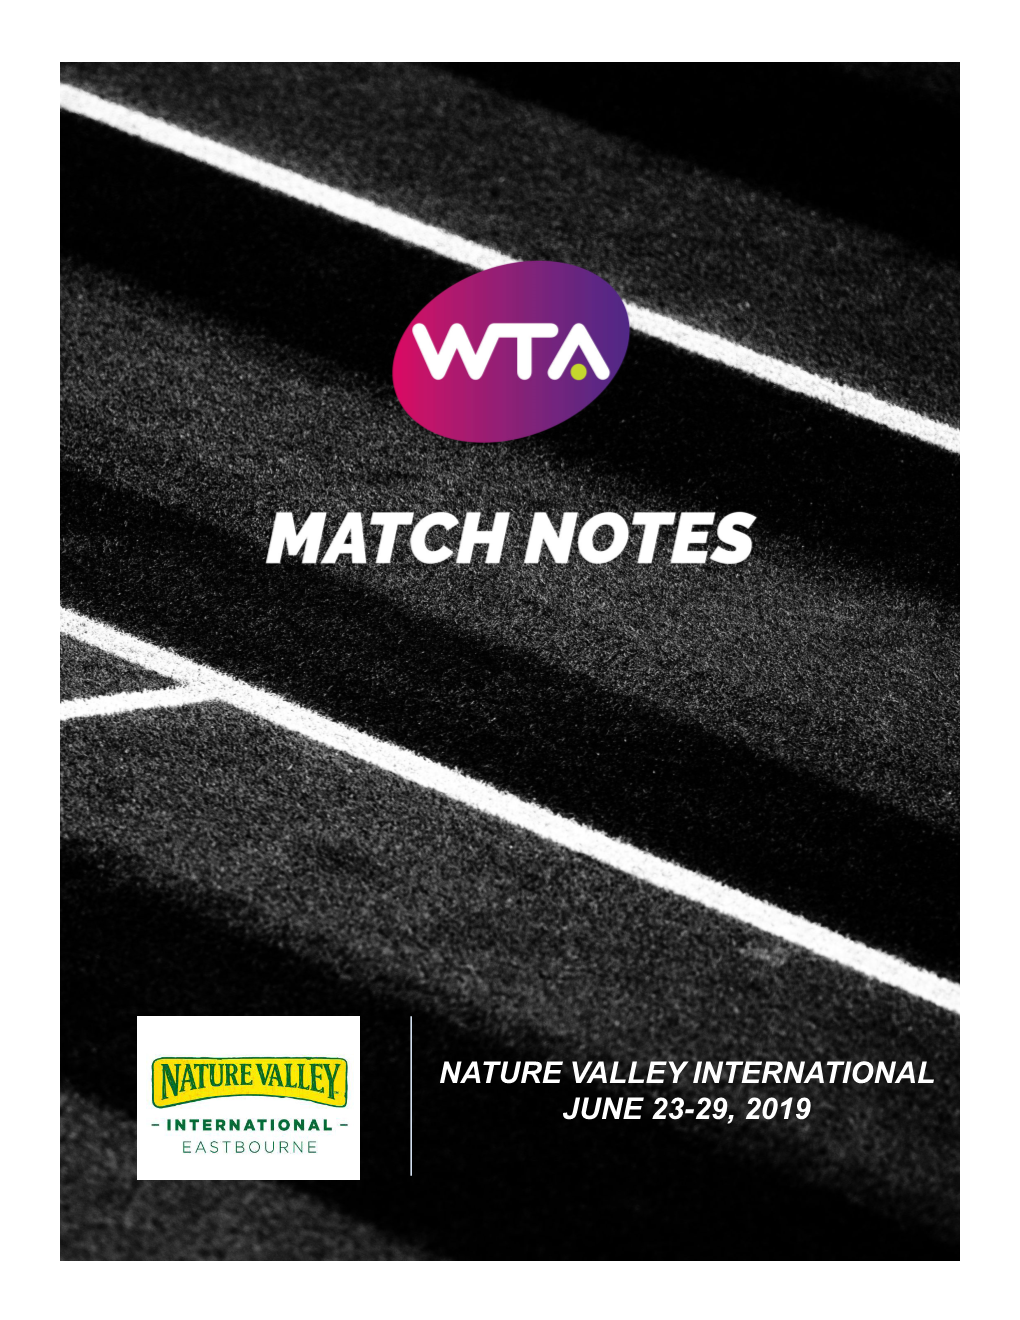 Nature Valley International June 23-29, 2019 Women’S Tennis Association Match Notes